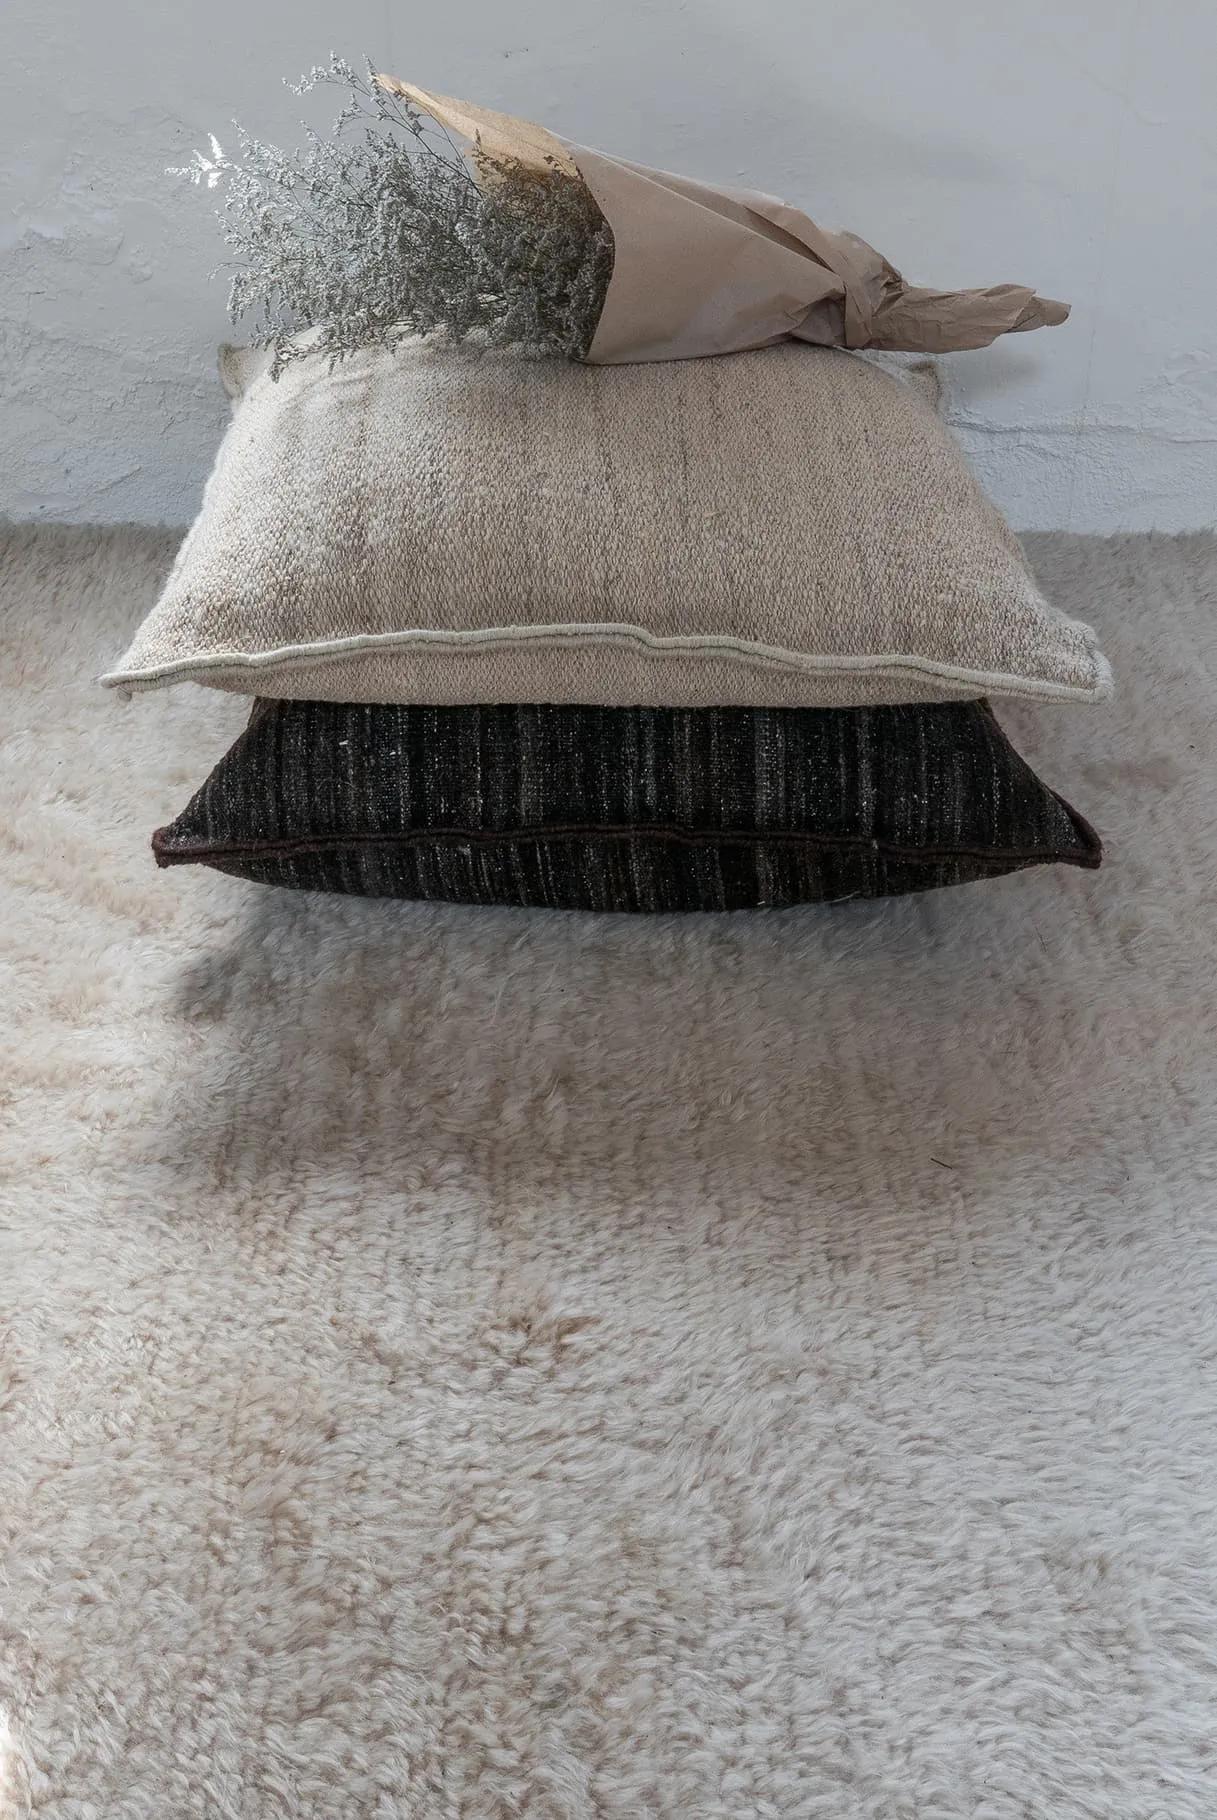 Coussin en kilim lourd 'Wellbeing' de Ilse Crawford pour Nanimarquina.

Réalisé en laine afghane filée à la main et rempli de liège à 100 %, ce coussin apporte chaleur, douceur et confort à tout intérieur. La collection 'Wellbeing' n'utilise que